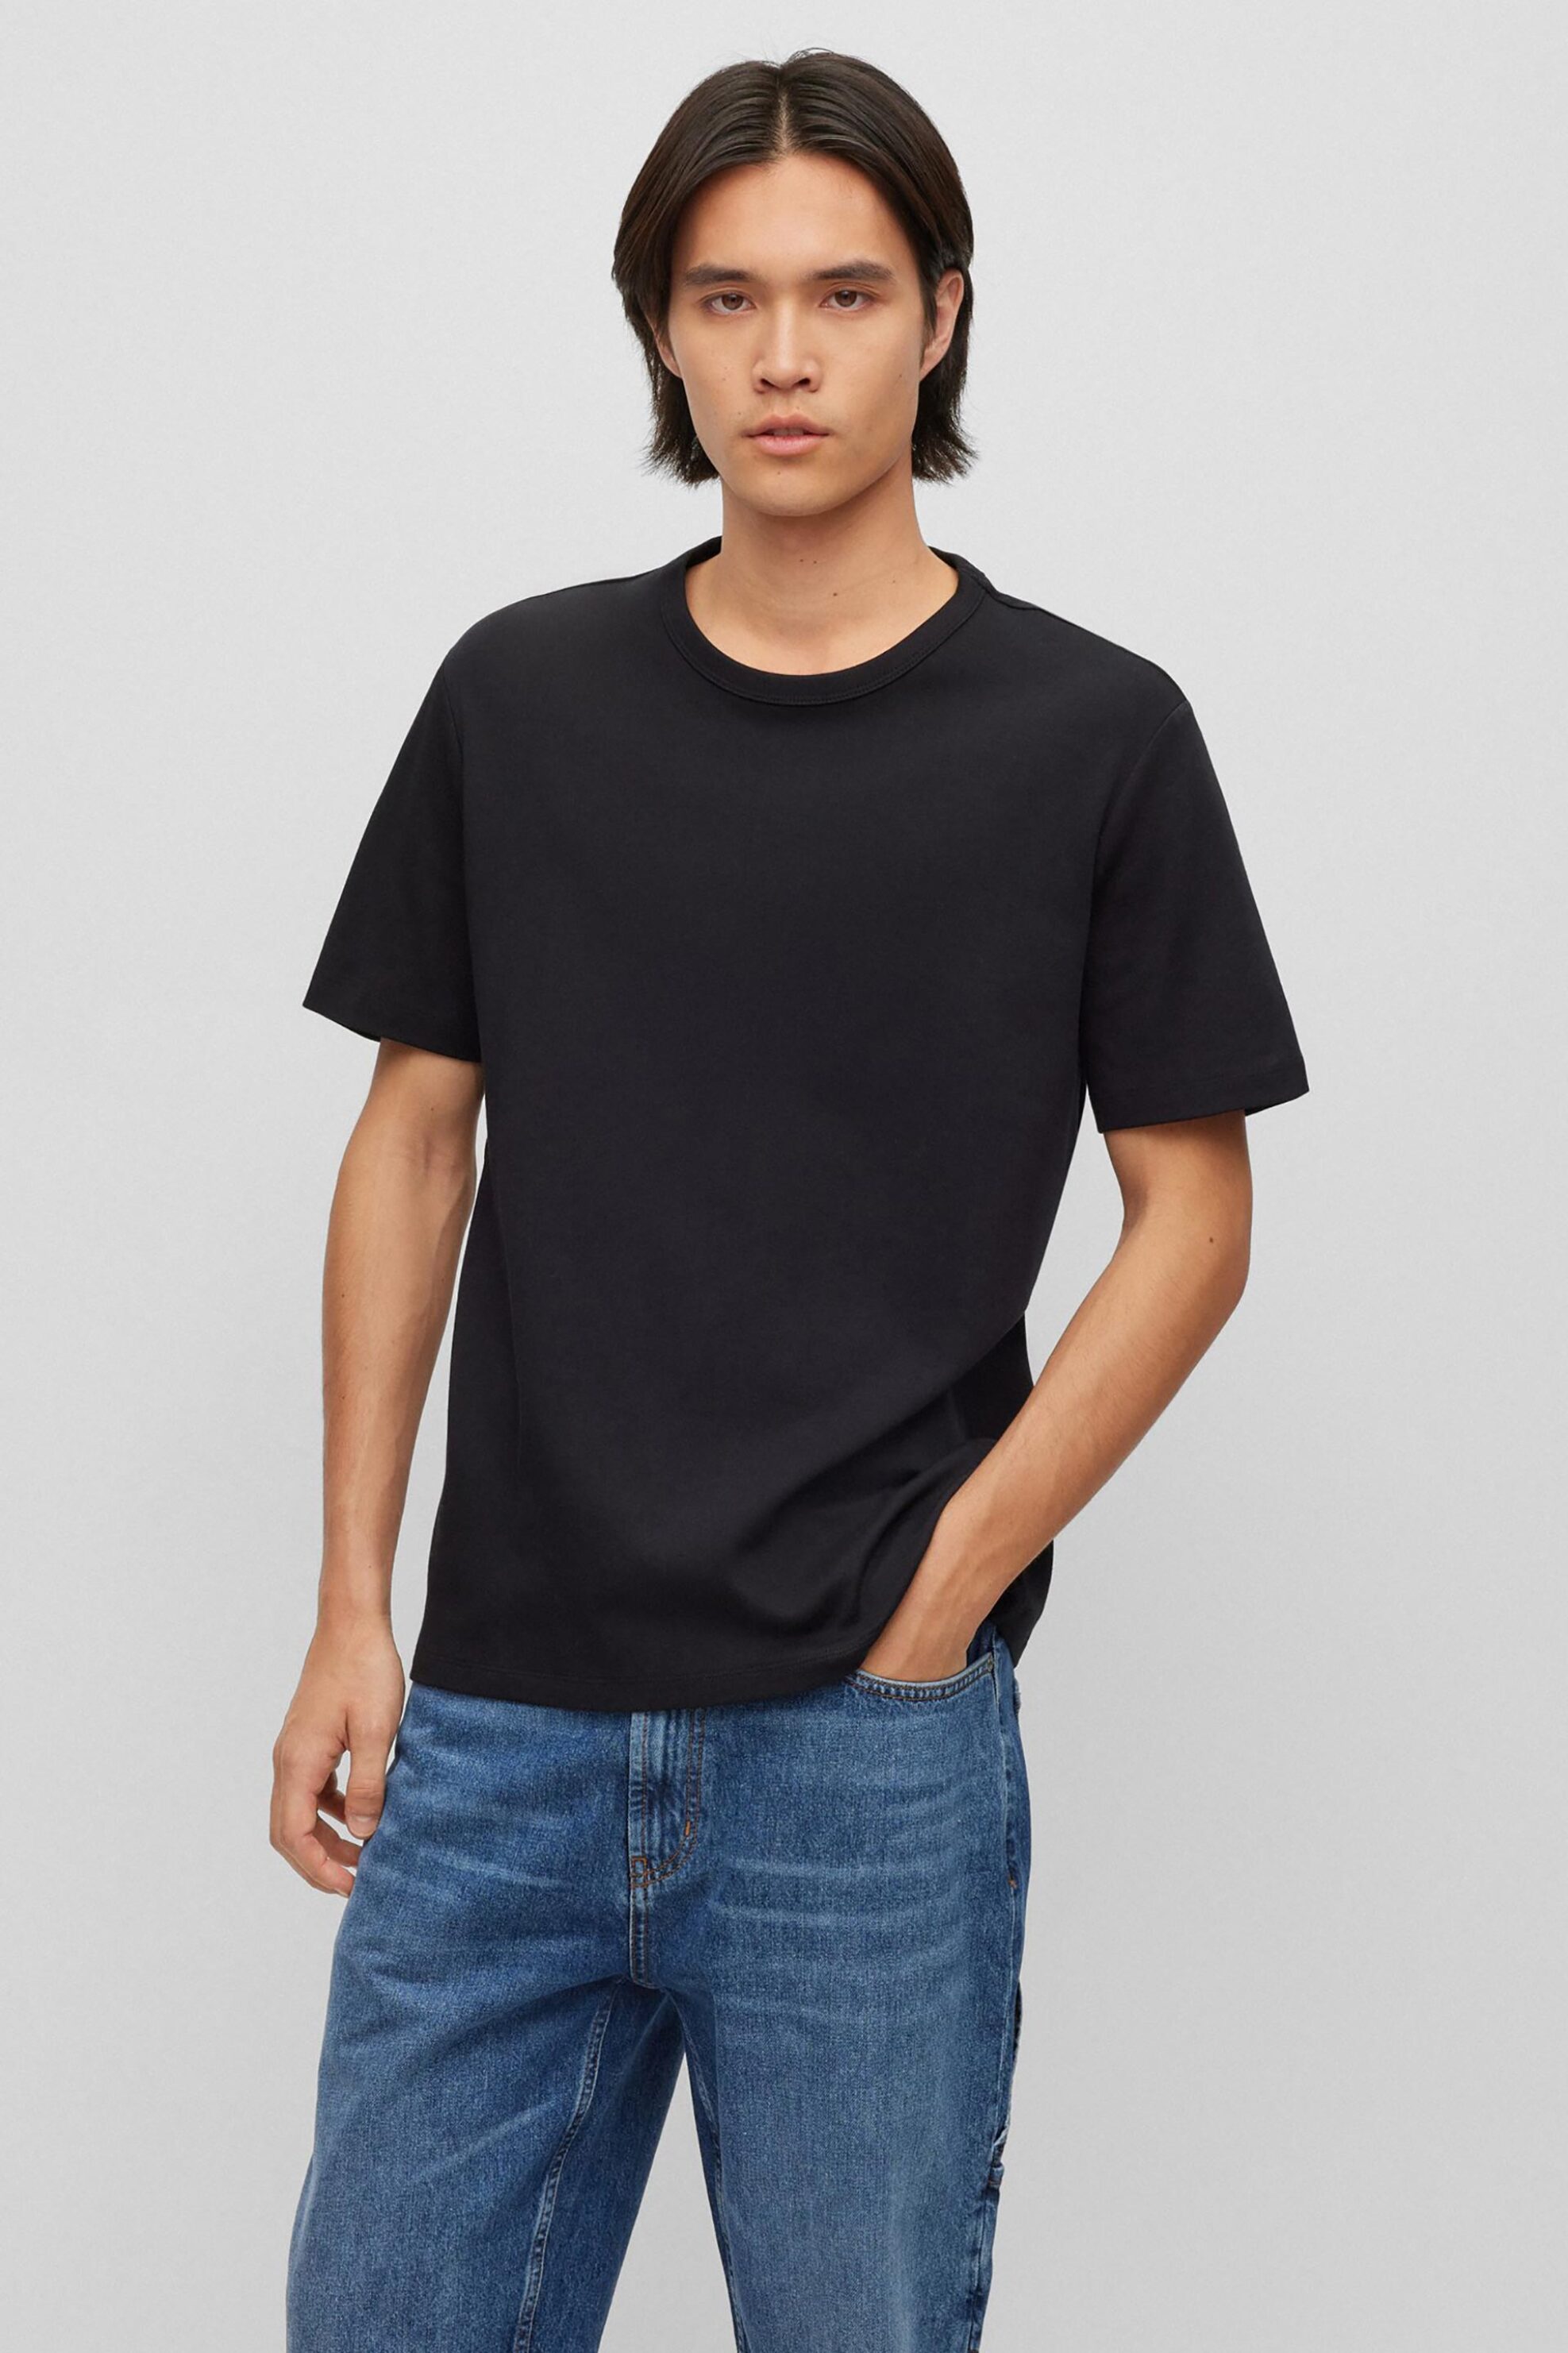 Ανδρική Μόδα > Ανδρικά Ρούχα > Ανδρικές Μπλούζες > Ανδρικά T-Shirts Hugo Boss ανδρικό T-shirt μονόχρωμο με στρογγυλή λαιμόκοψη "Dozy" - 50480434 Μαύρο